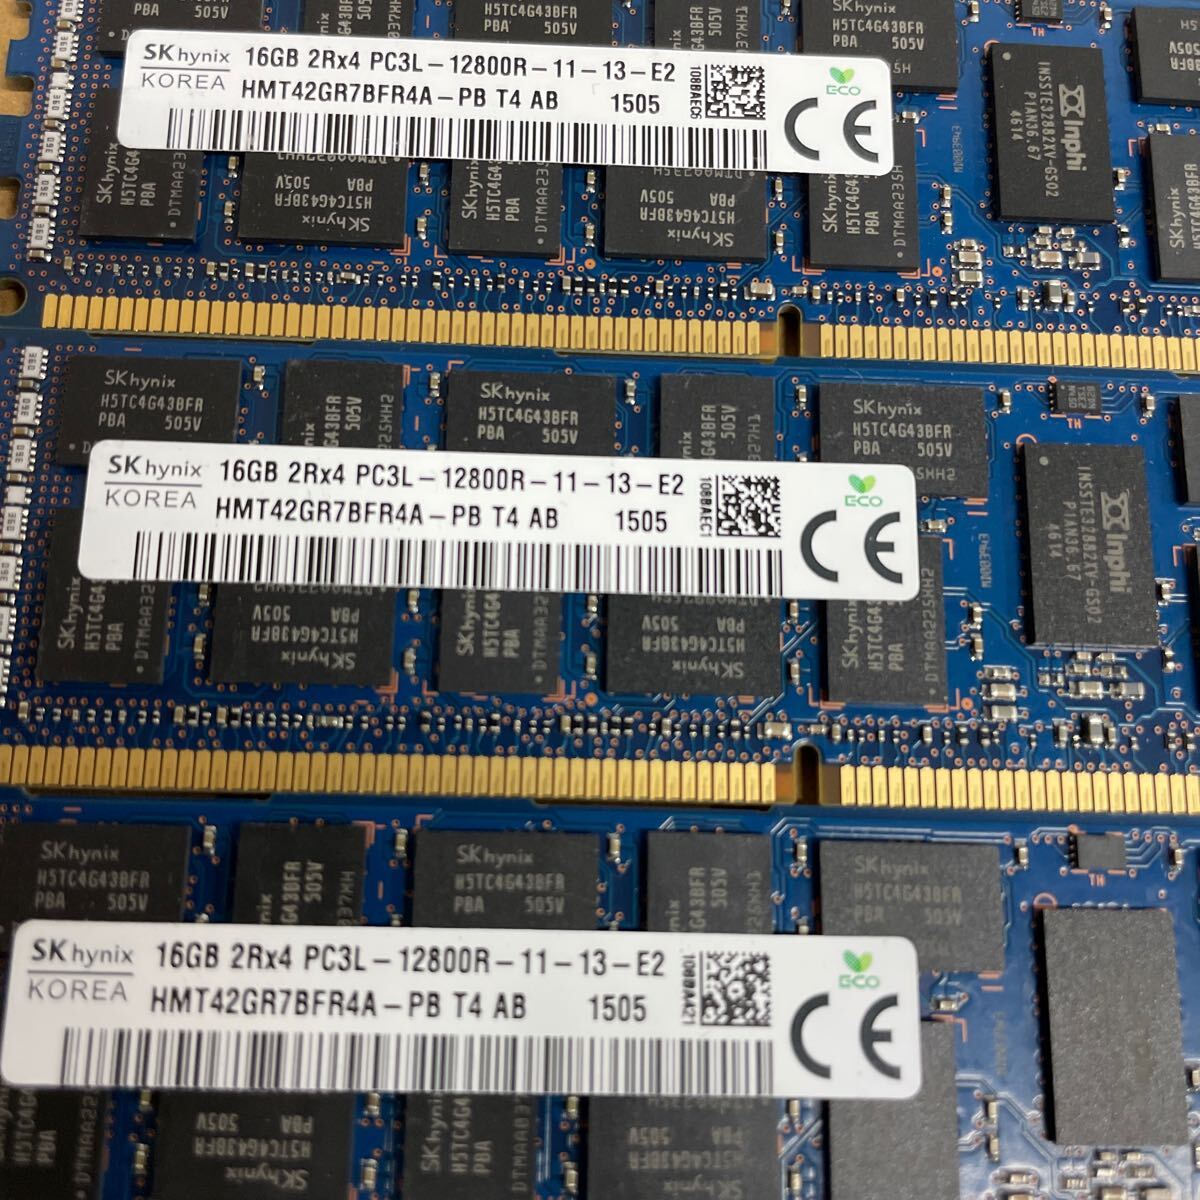 ワ76 SKhynix デスクトップ用メモリ 16GB 2Rx4 PC3L-12800R 6枚の画像4